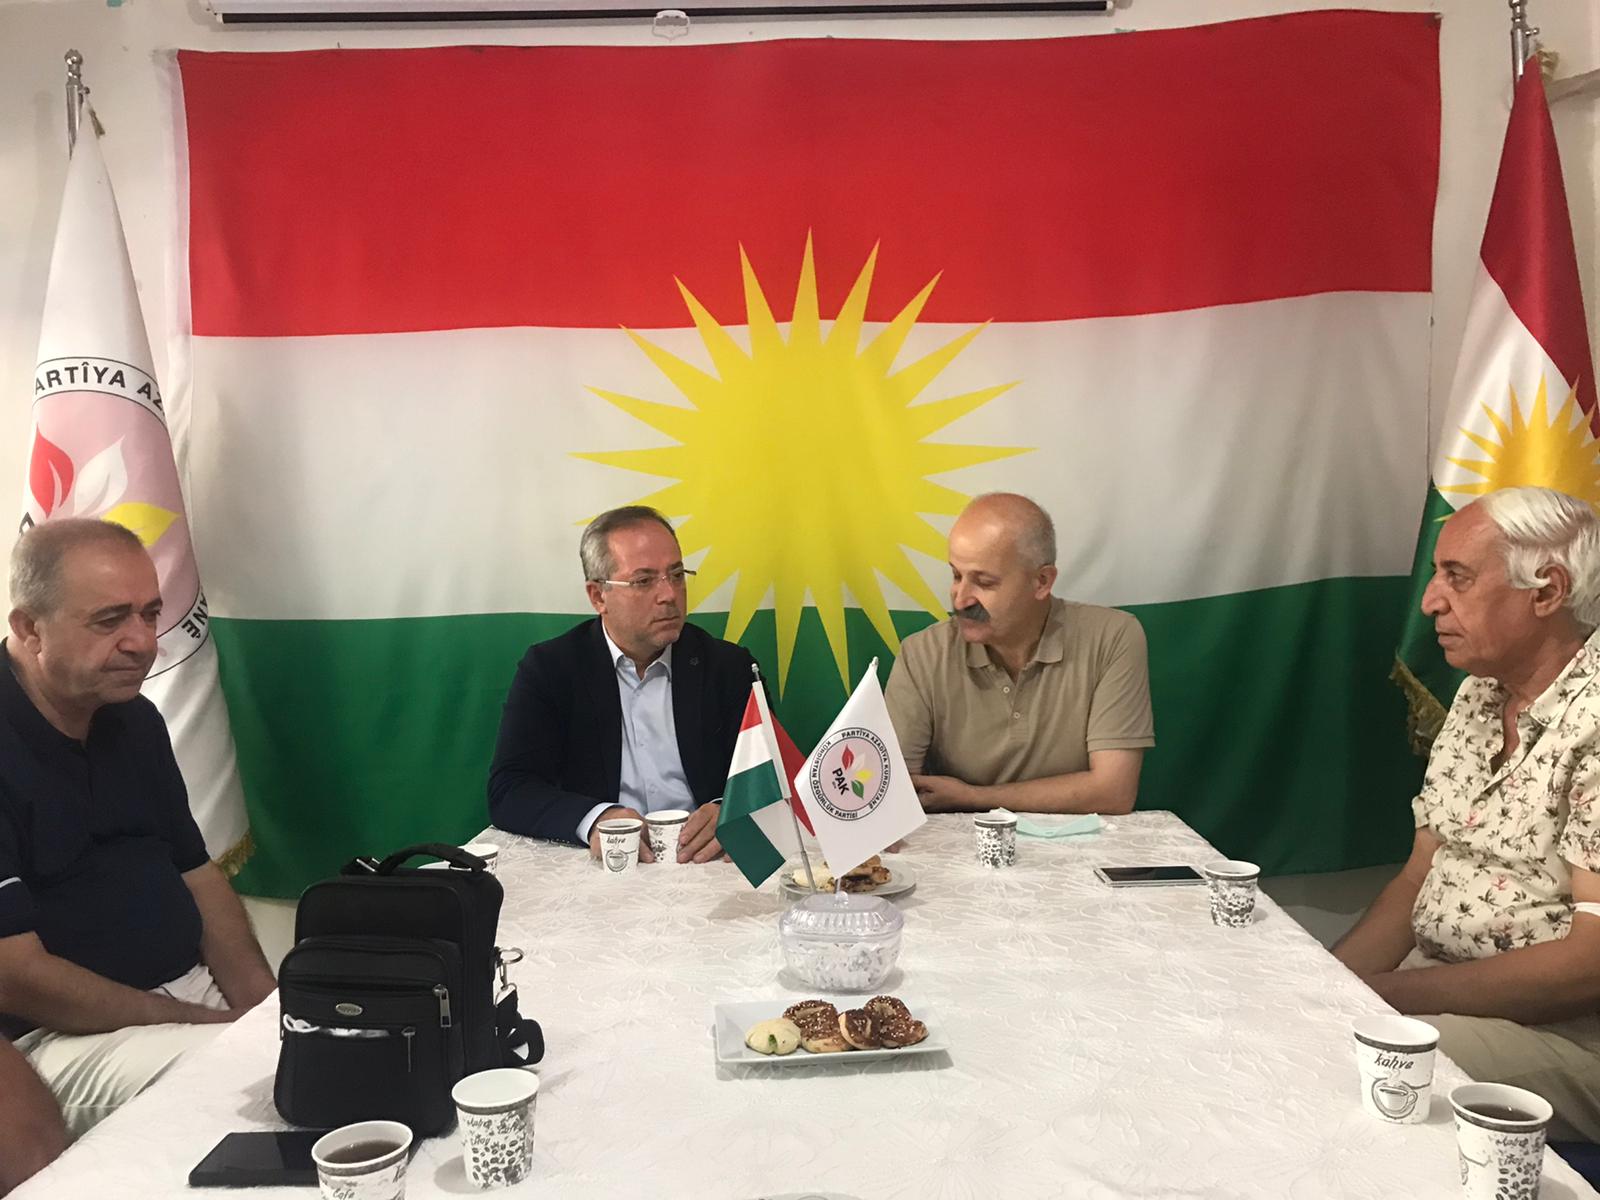 Kürdistan Özgürlük Partisi Genel başkan Yardımcısı sayın Vahit ABA ve çalışma arkadaşalarını ziyaret ettik. Türkiye’de çözülmeyecek hiçbir sorun yoktur, 